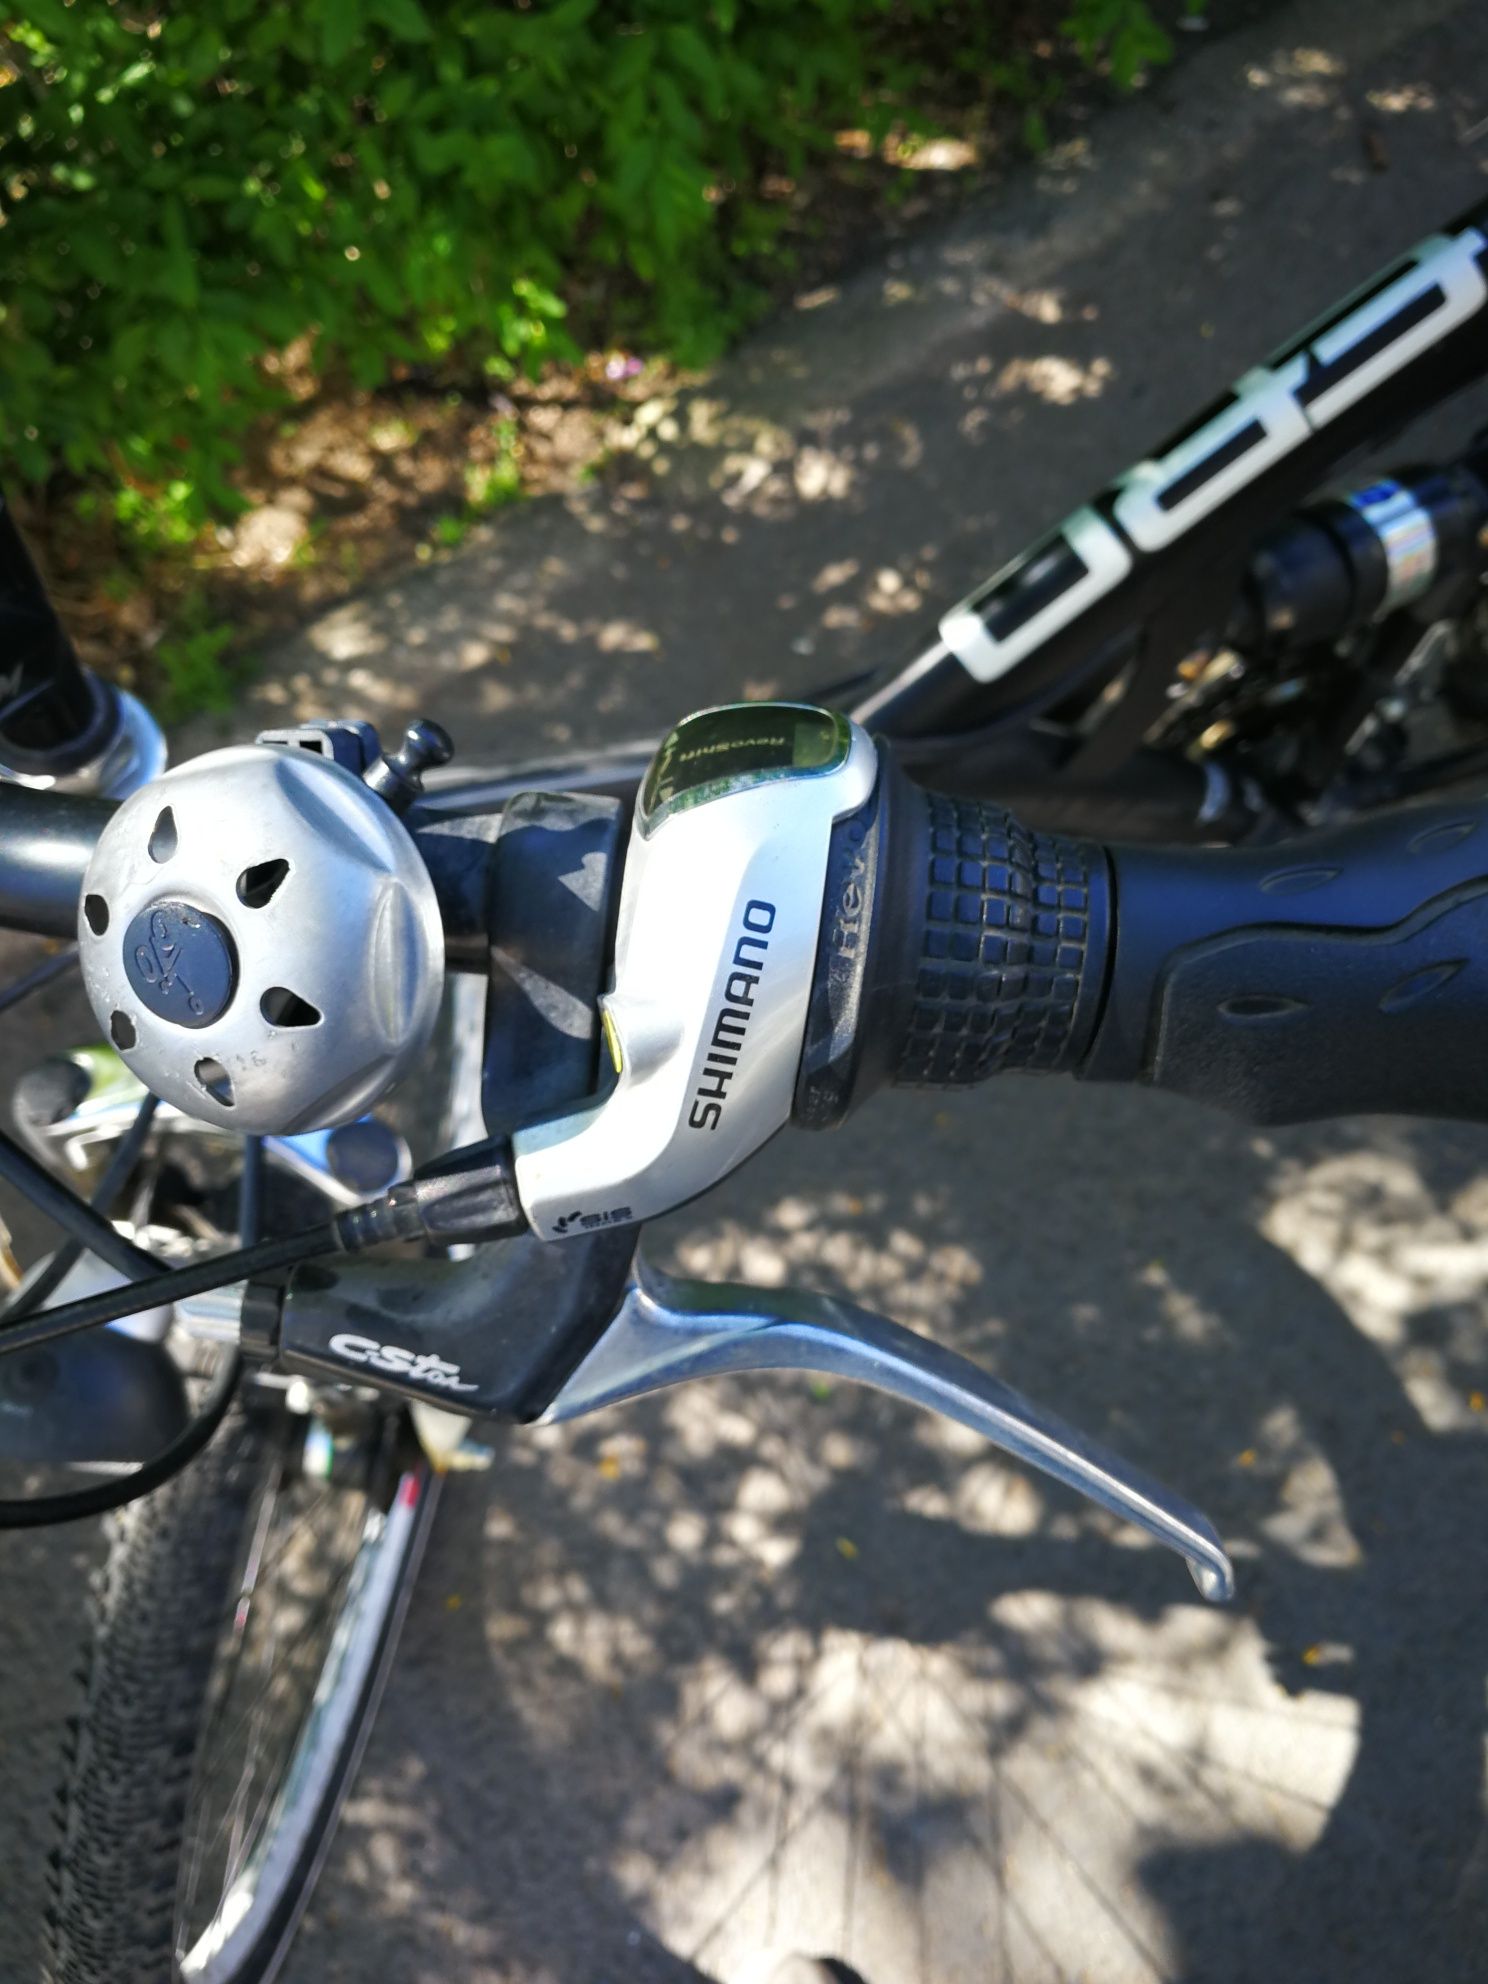 Bicicletă 26"Shimano cu suspensii, far și stop pe dinam in roată